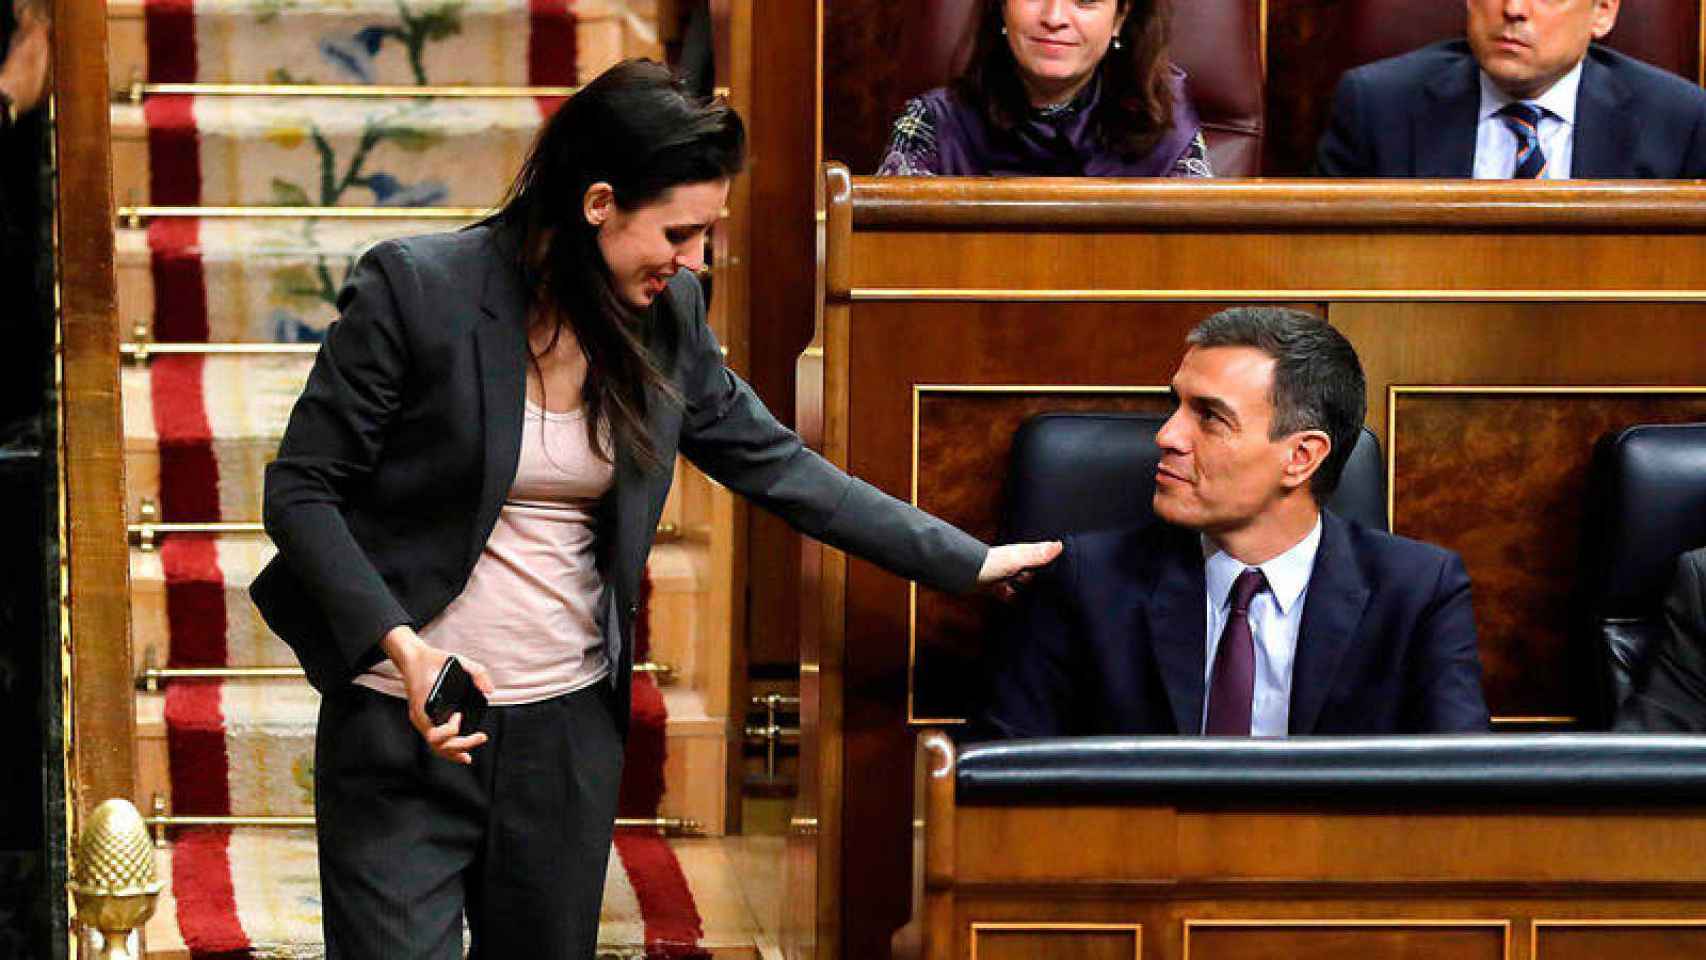 La ministra de Igualdad y líder de Podemos, Irene Montero, saluda a Pedro Sánchez en el Congreso.